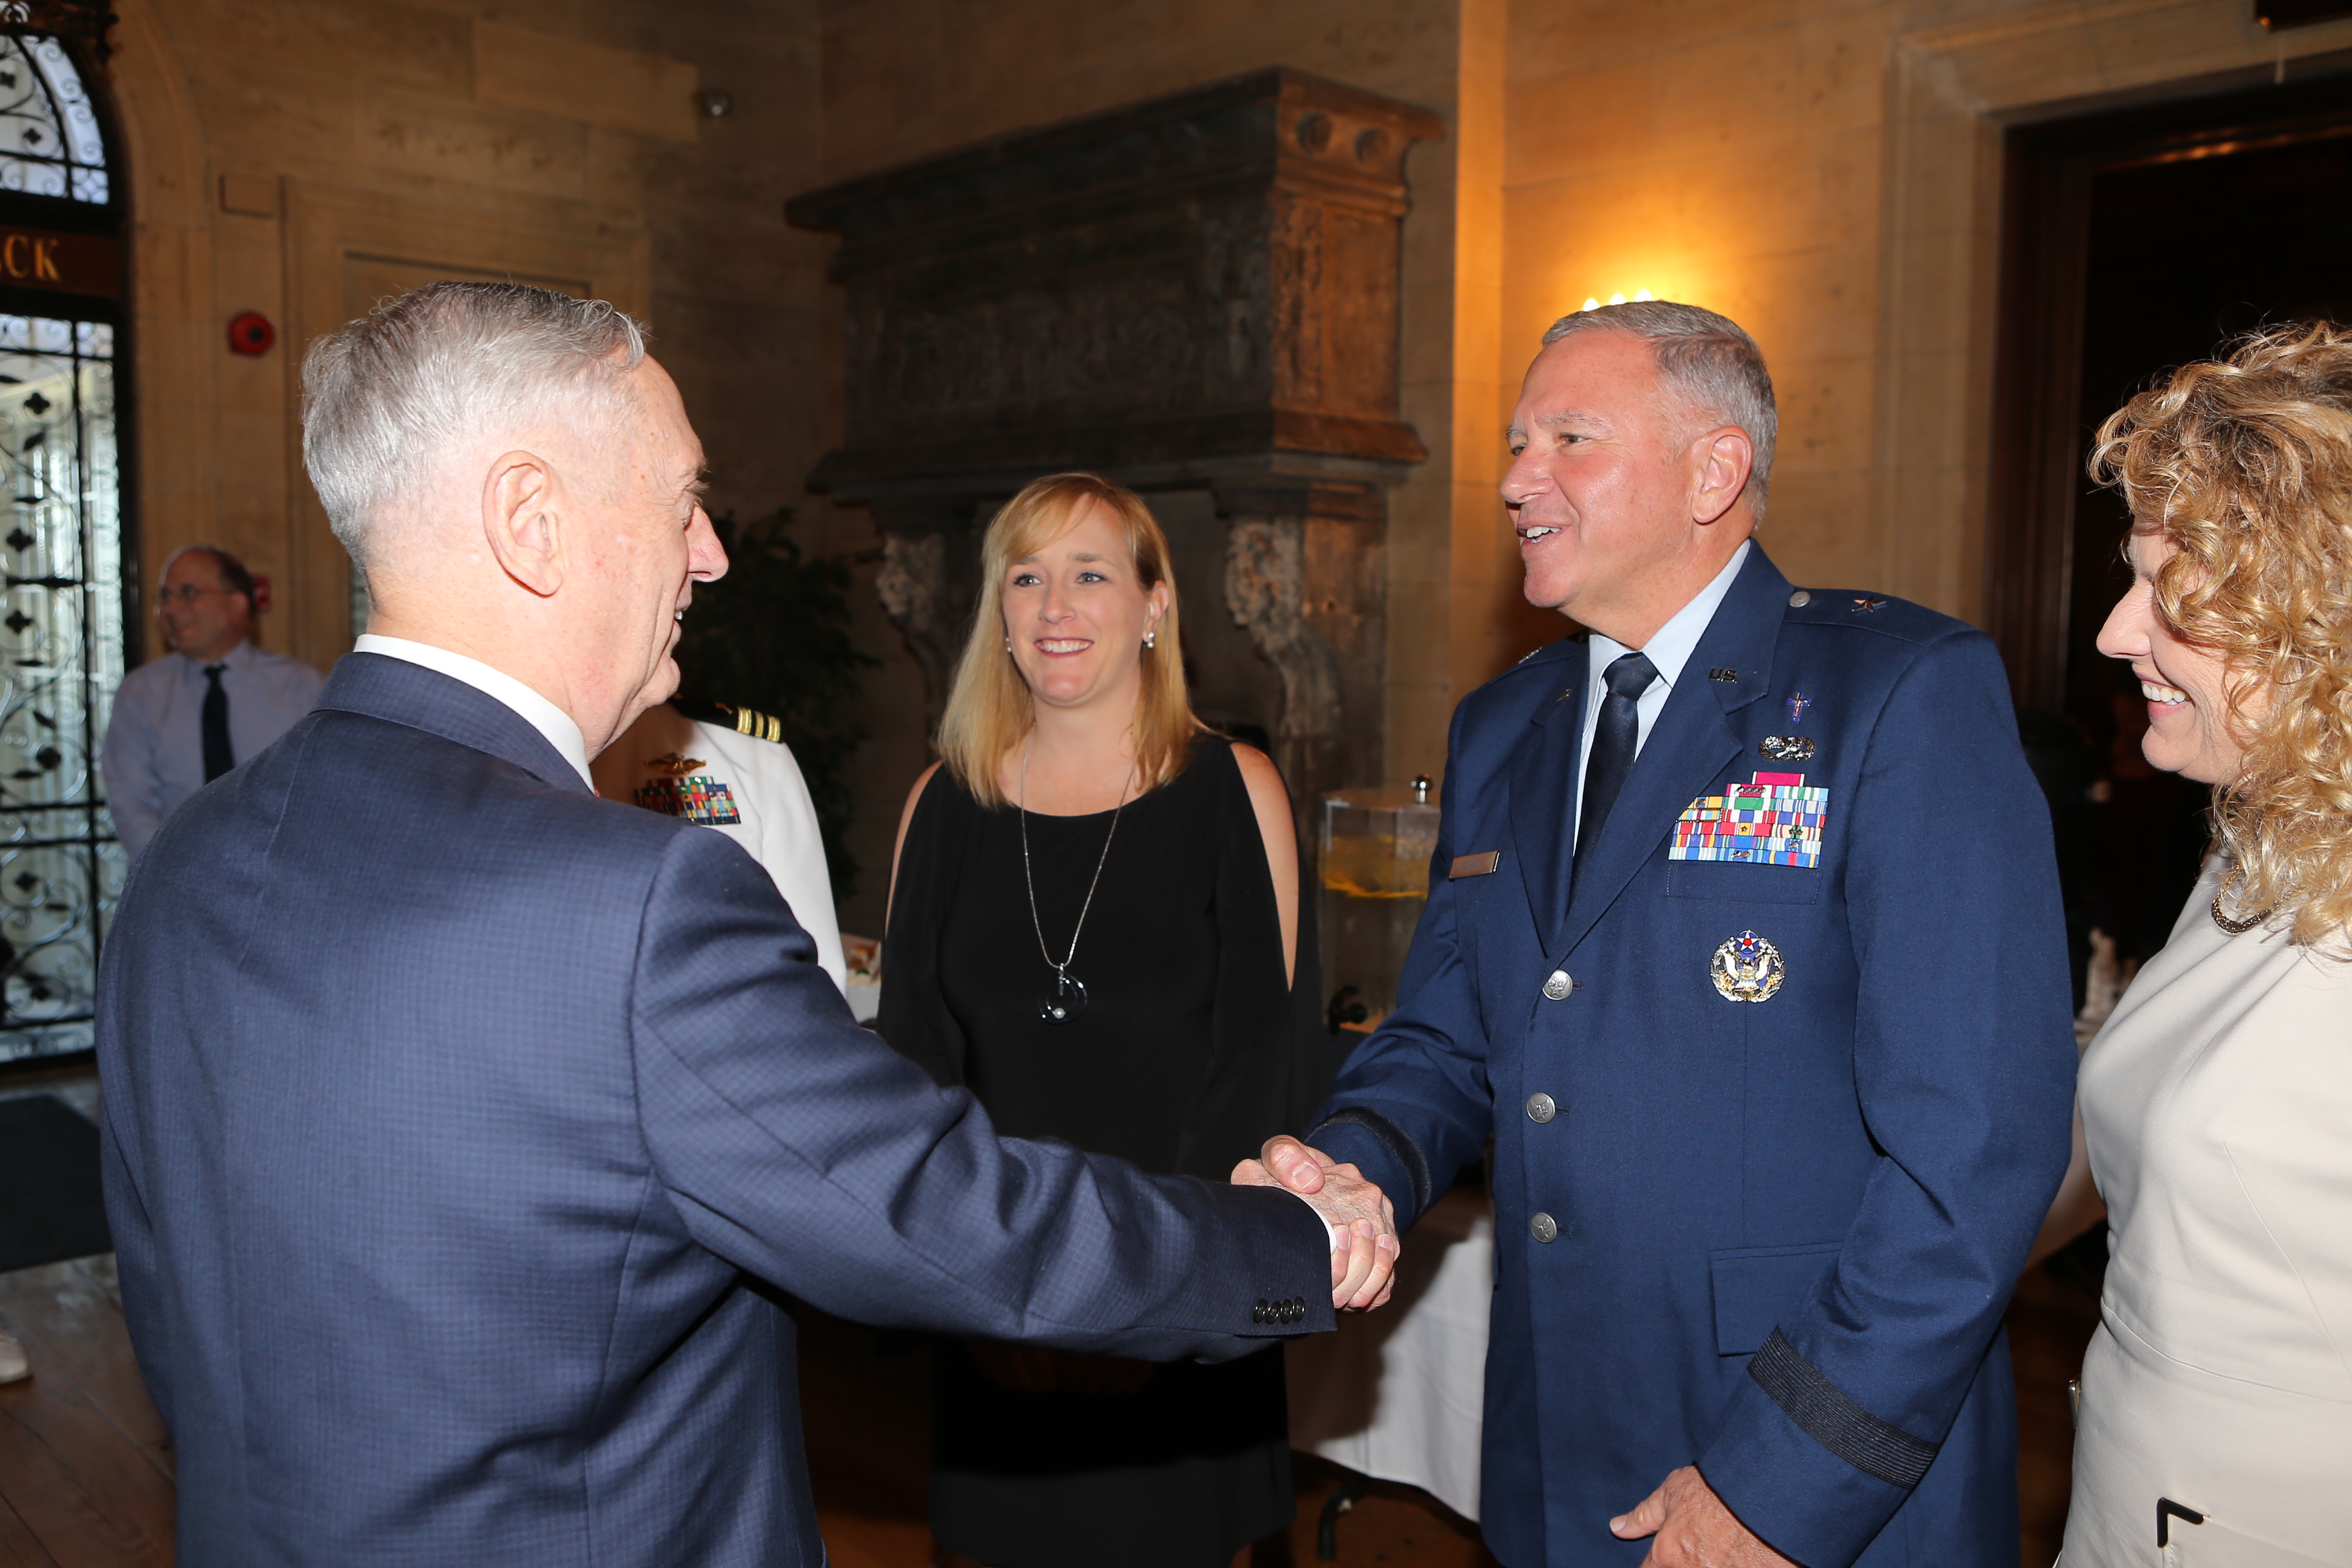 Brigadier General Schaick greets Secretary Mattis